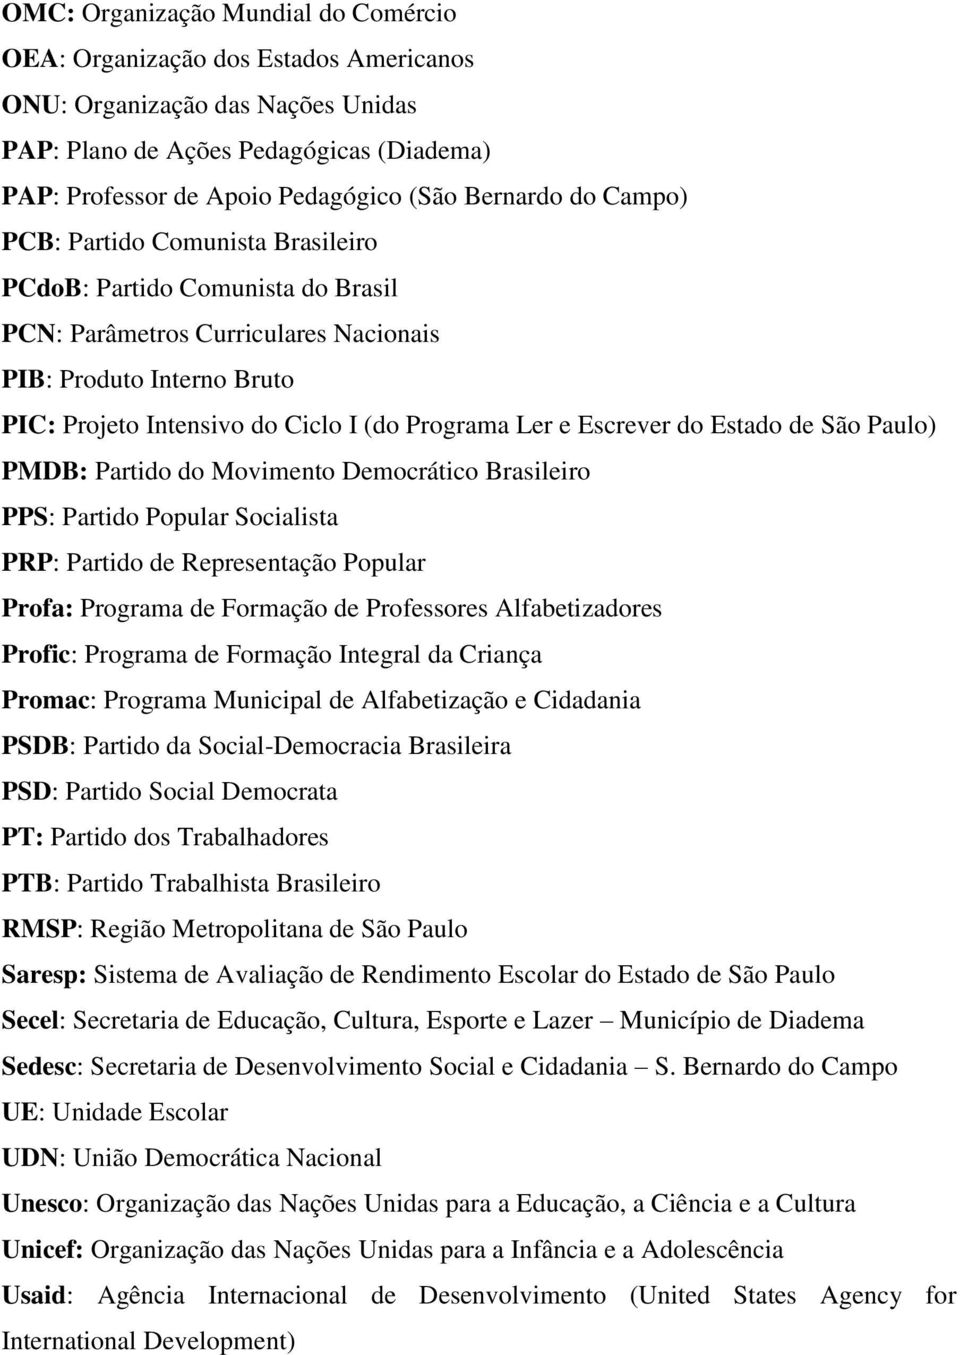 Programa Ler e Escrever do Estado de São Paulo) PMDB: Partido do Movimento Democrático Brasileiro PPS: Partido Popular Socialista PRP: Partido de Representação Popular Profa: Programa de Formação de